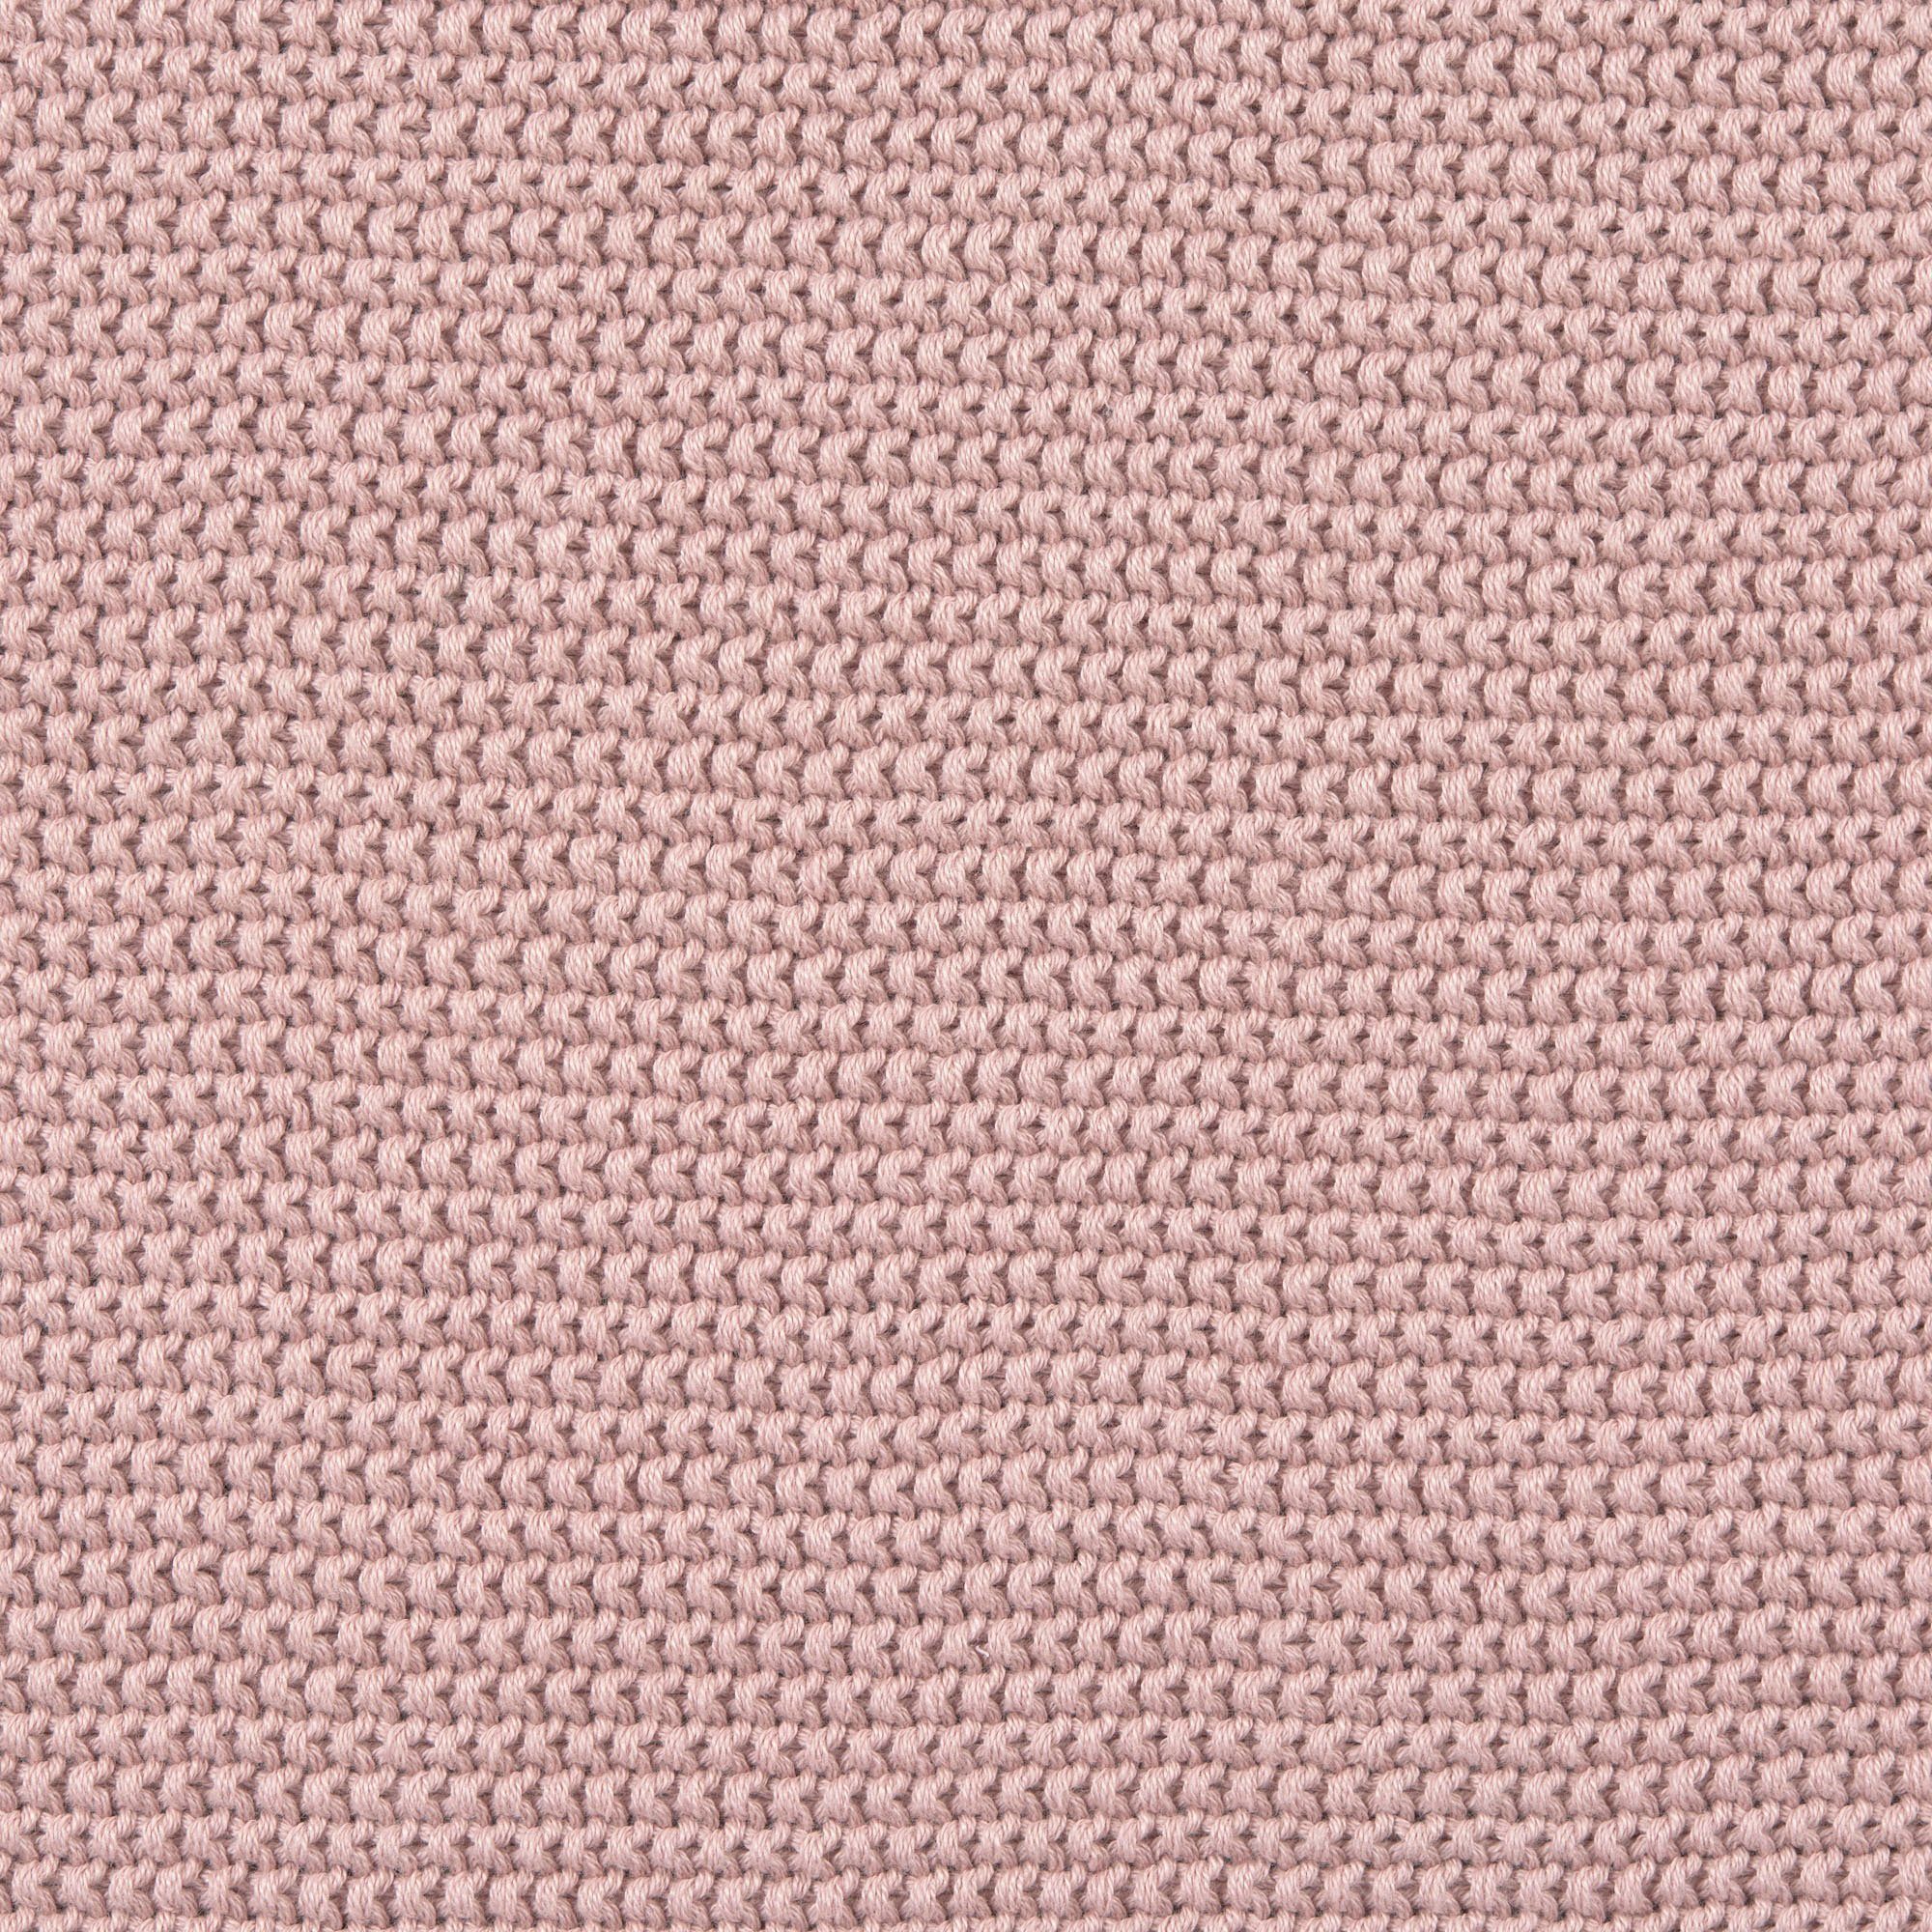 27262 with für LÄSSIG, Einschlagdecke durch materials, pink, dusty Babyschale, organic Einschlagdecke GOTS zertifiziert BCS made